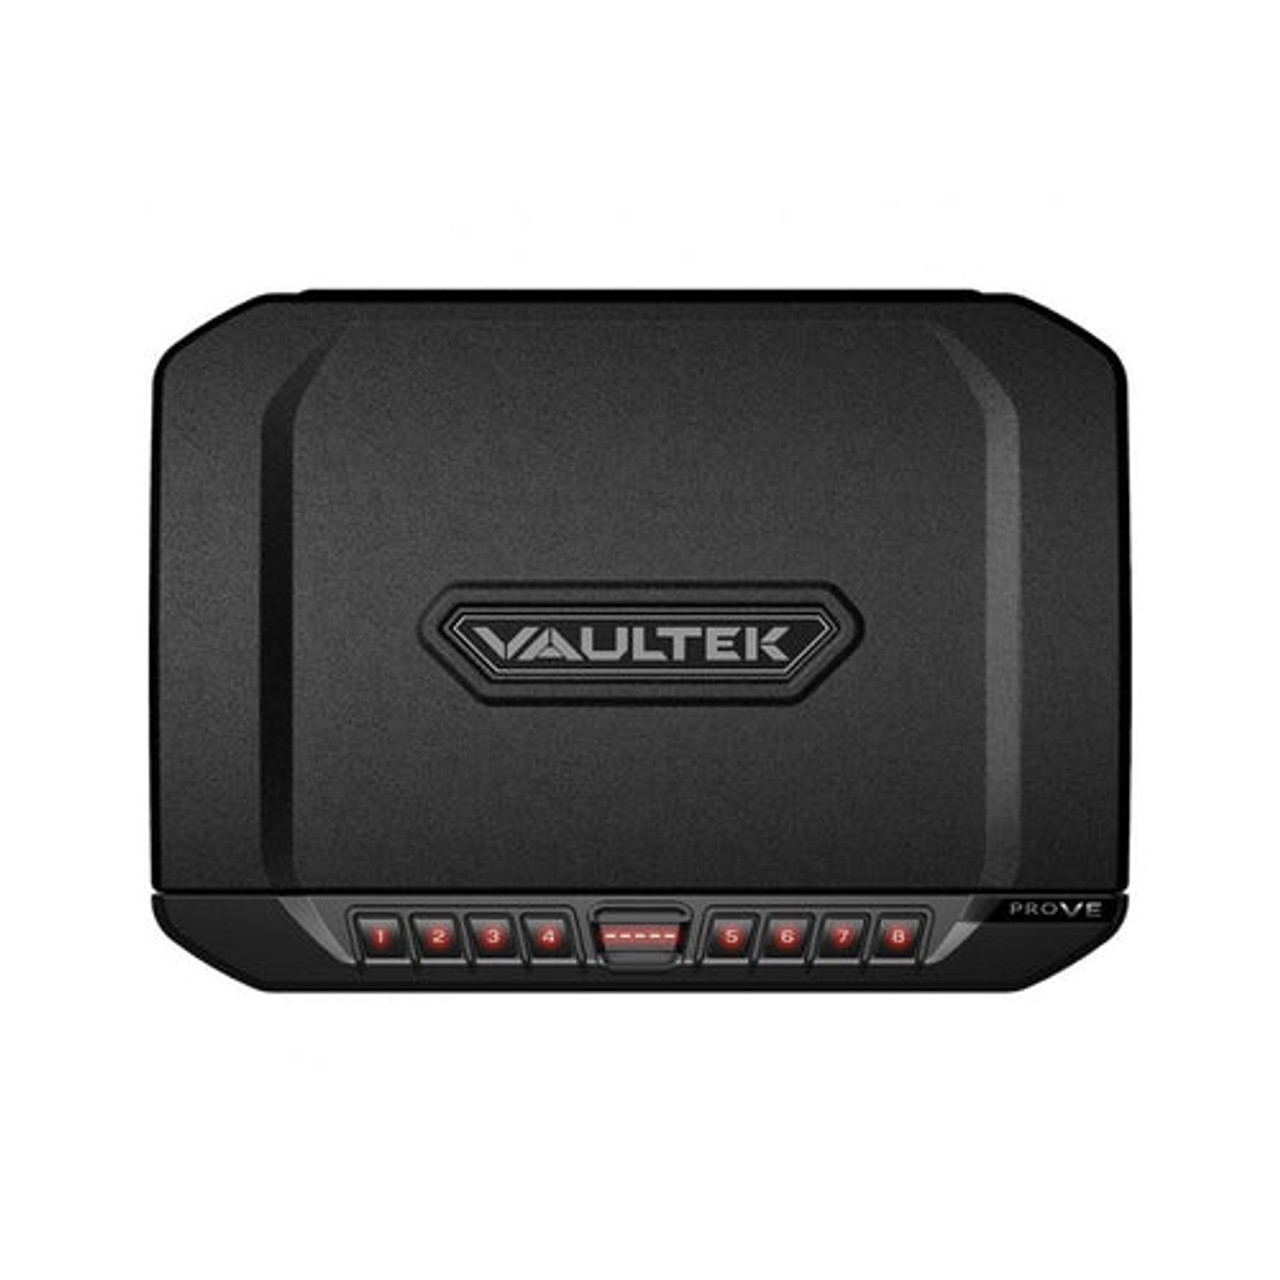 Vaultek VT Essentials Series Black